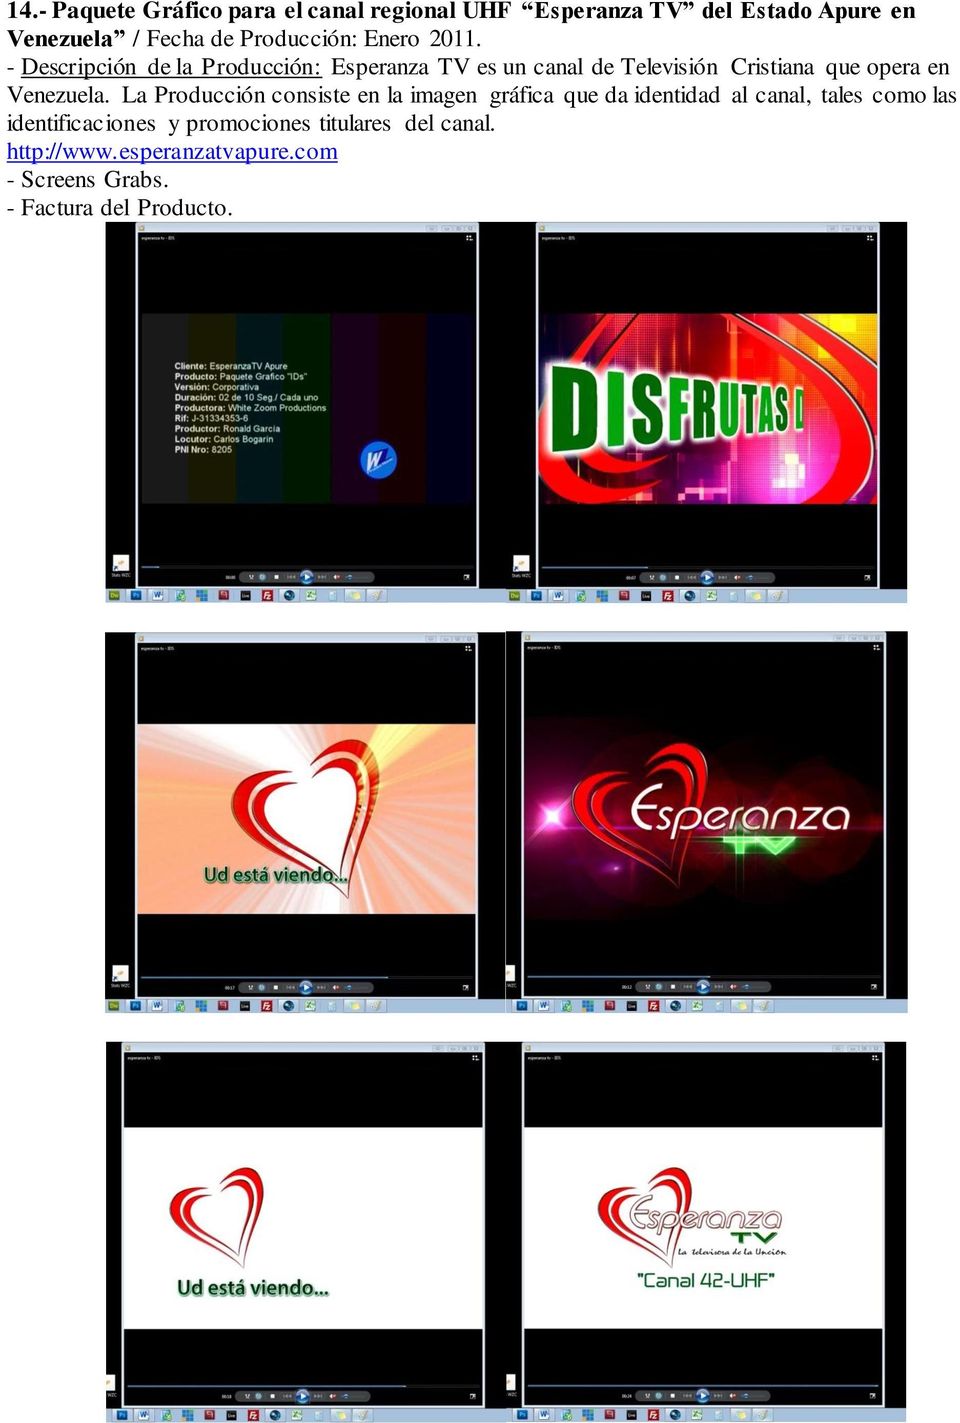 - Descripción de la Producción: Esperanza TV es un canal de Televisión Cristiana que opera en Venezuela.